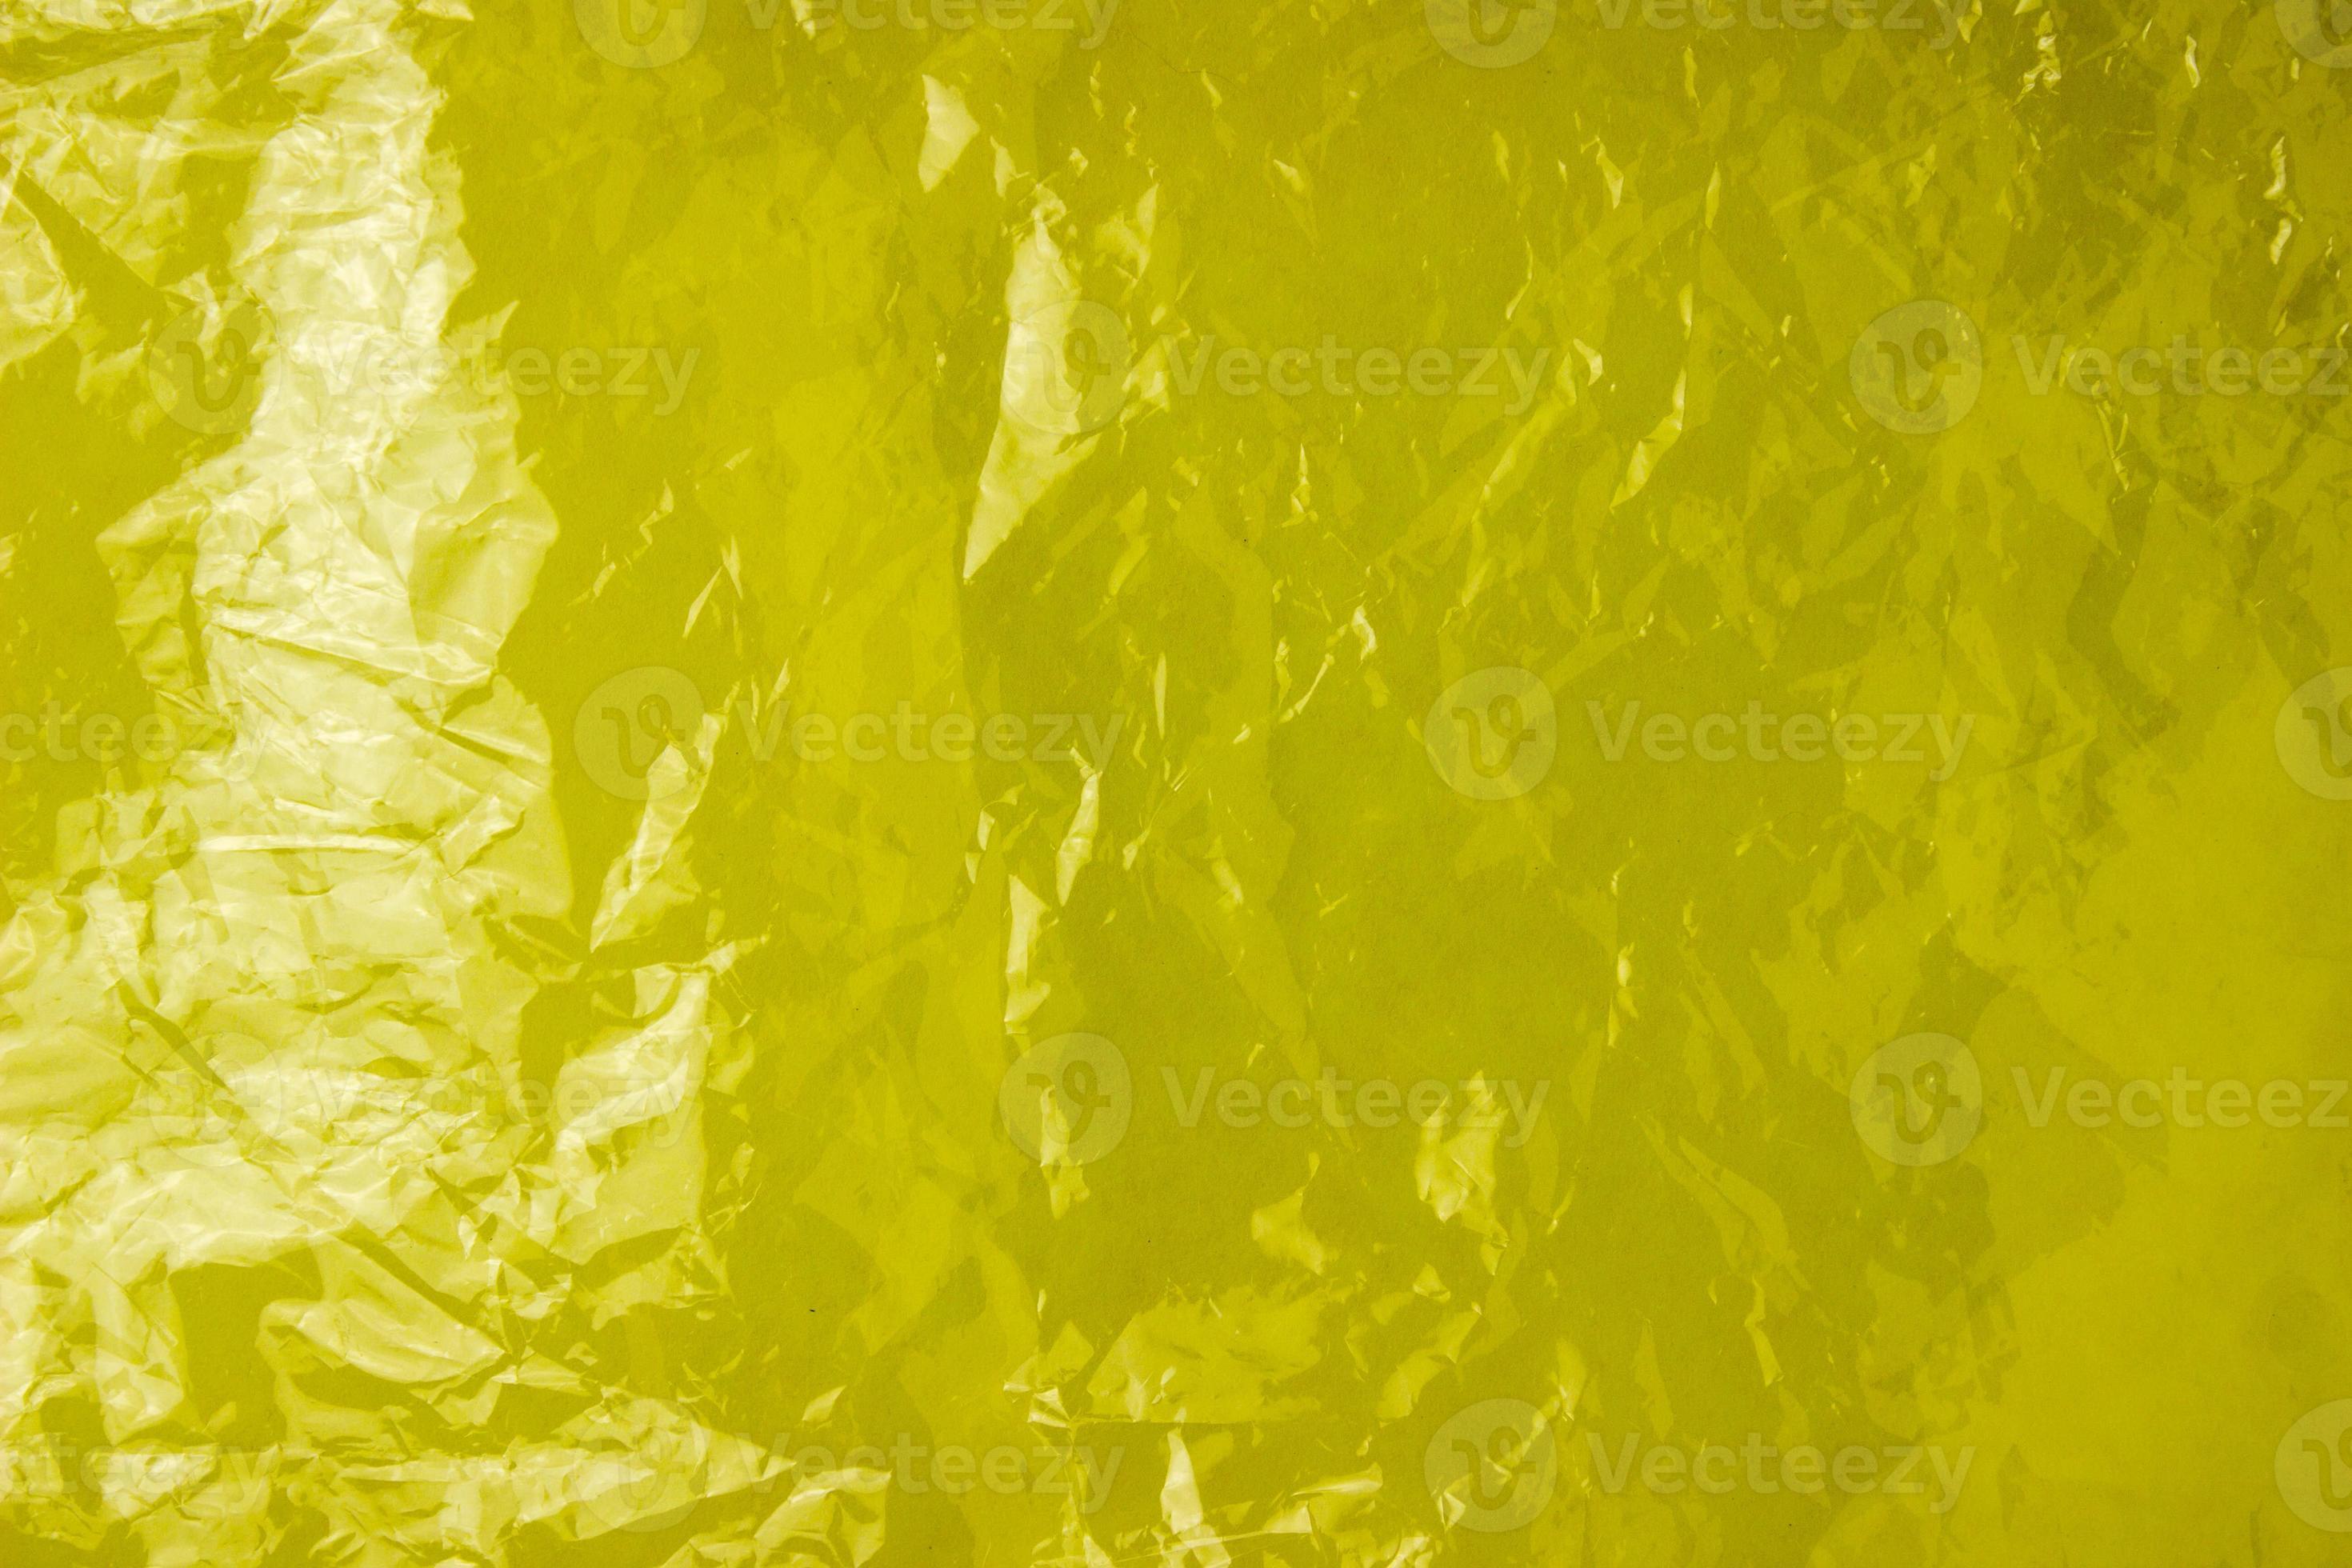 de textuur van de plastic zak op een gele achtergrond. verfrommelde transparante zak, plastic foto